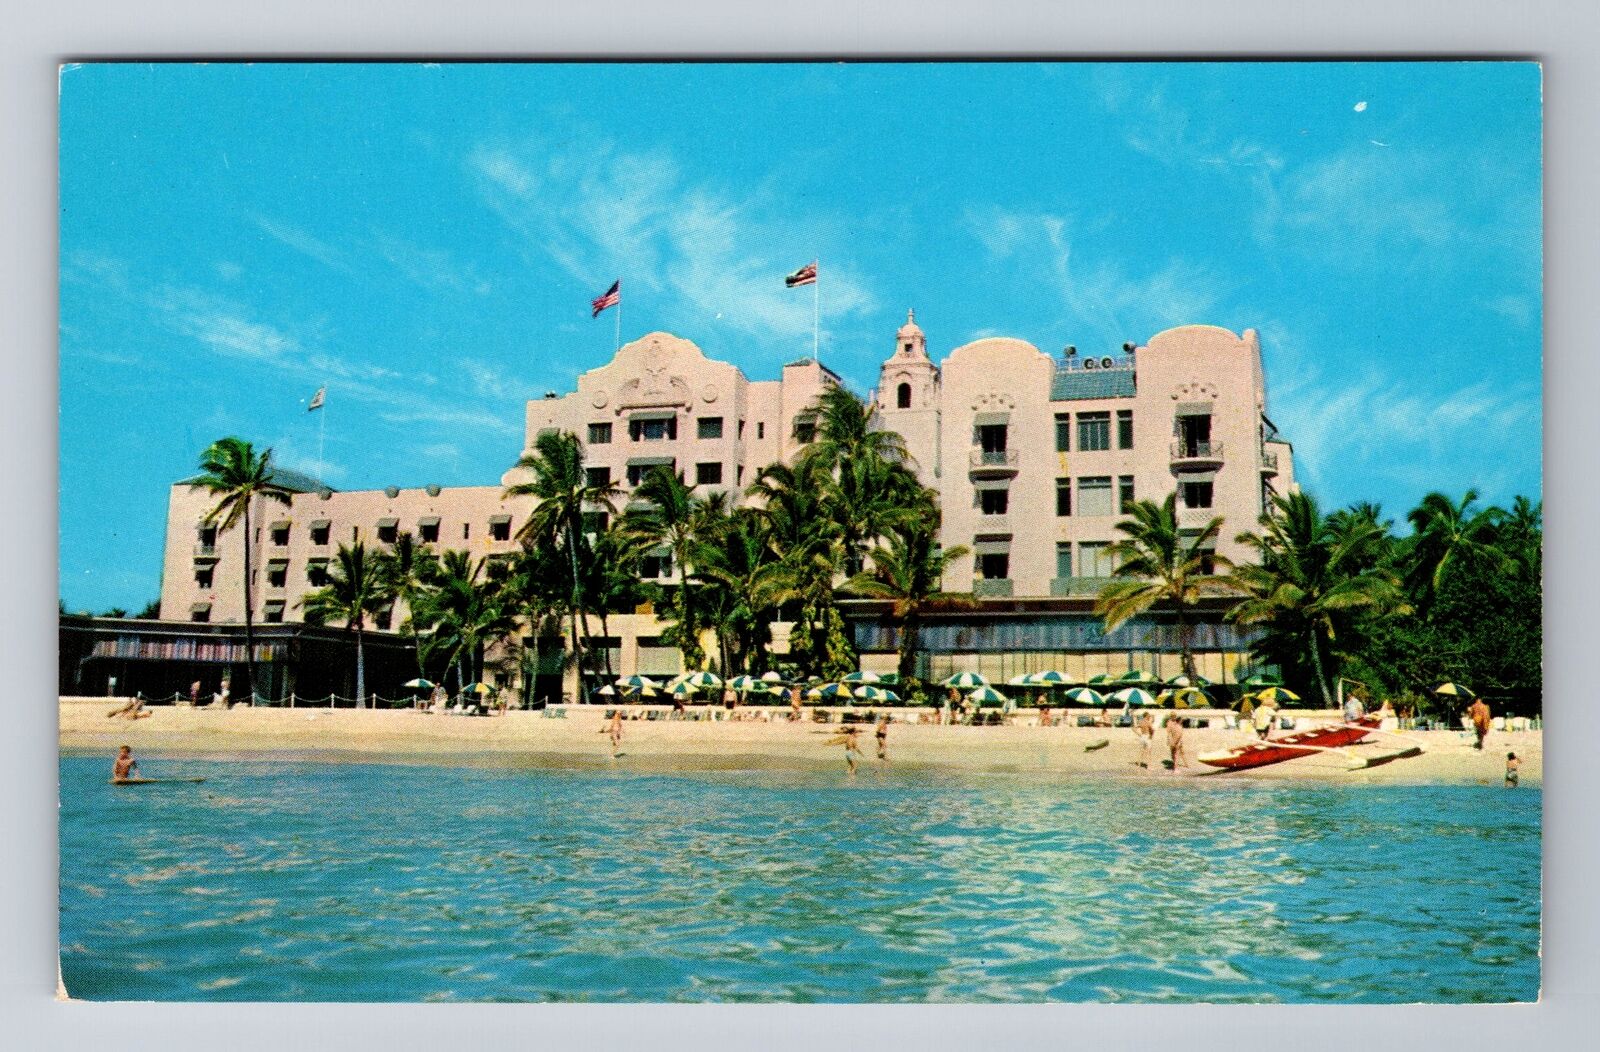 Honolulu HI- Hawaii, The Royal Hawaiian, Hotel, Advertisement, Vintage Postcard